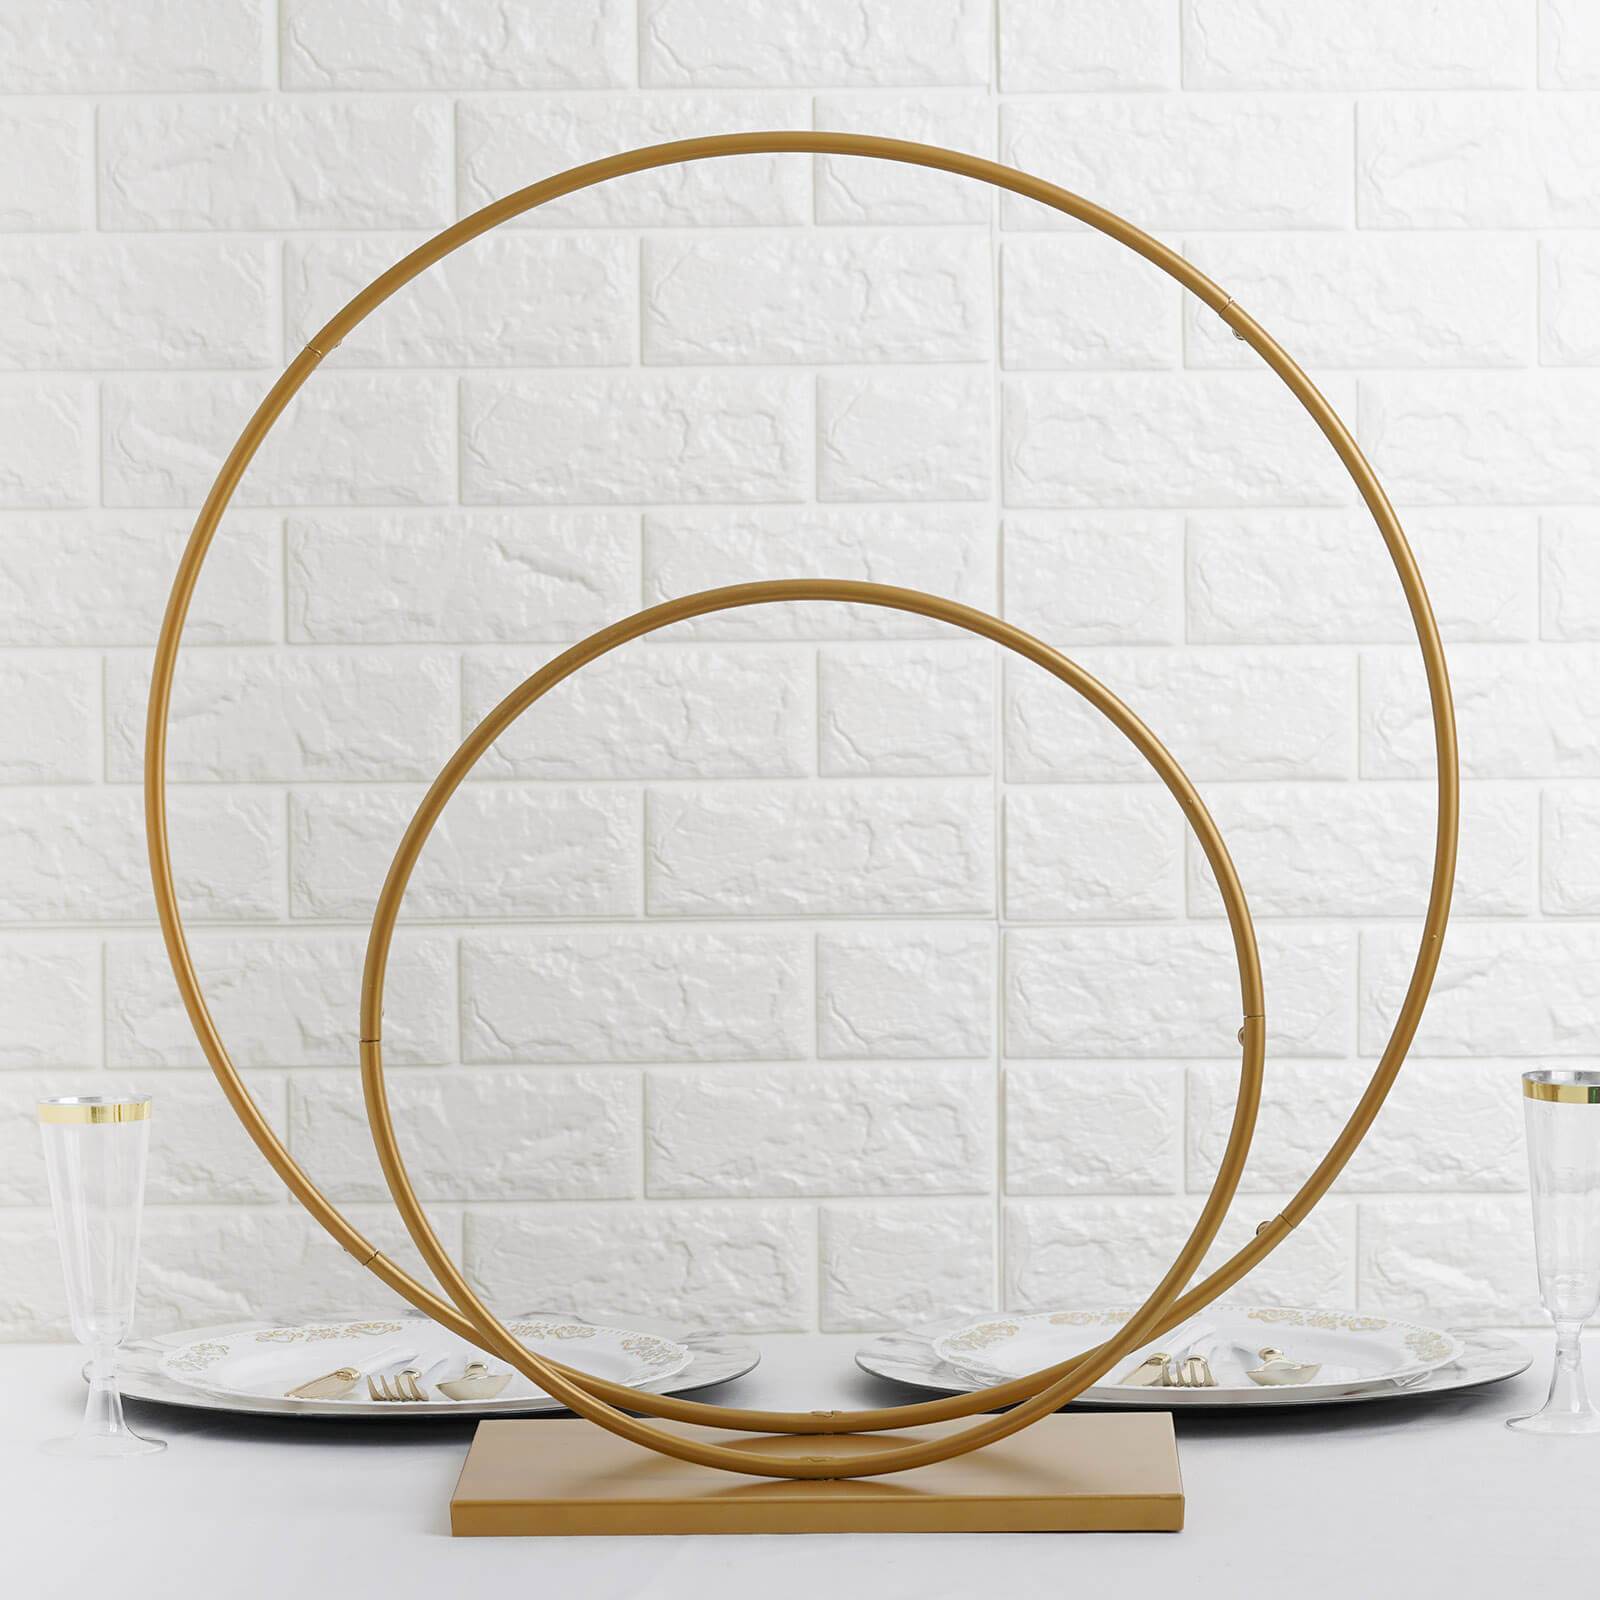 2 Gold Metal Round Hoops Standing Wreath Rings